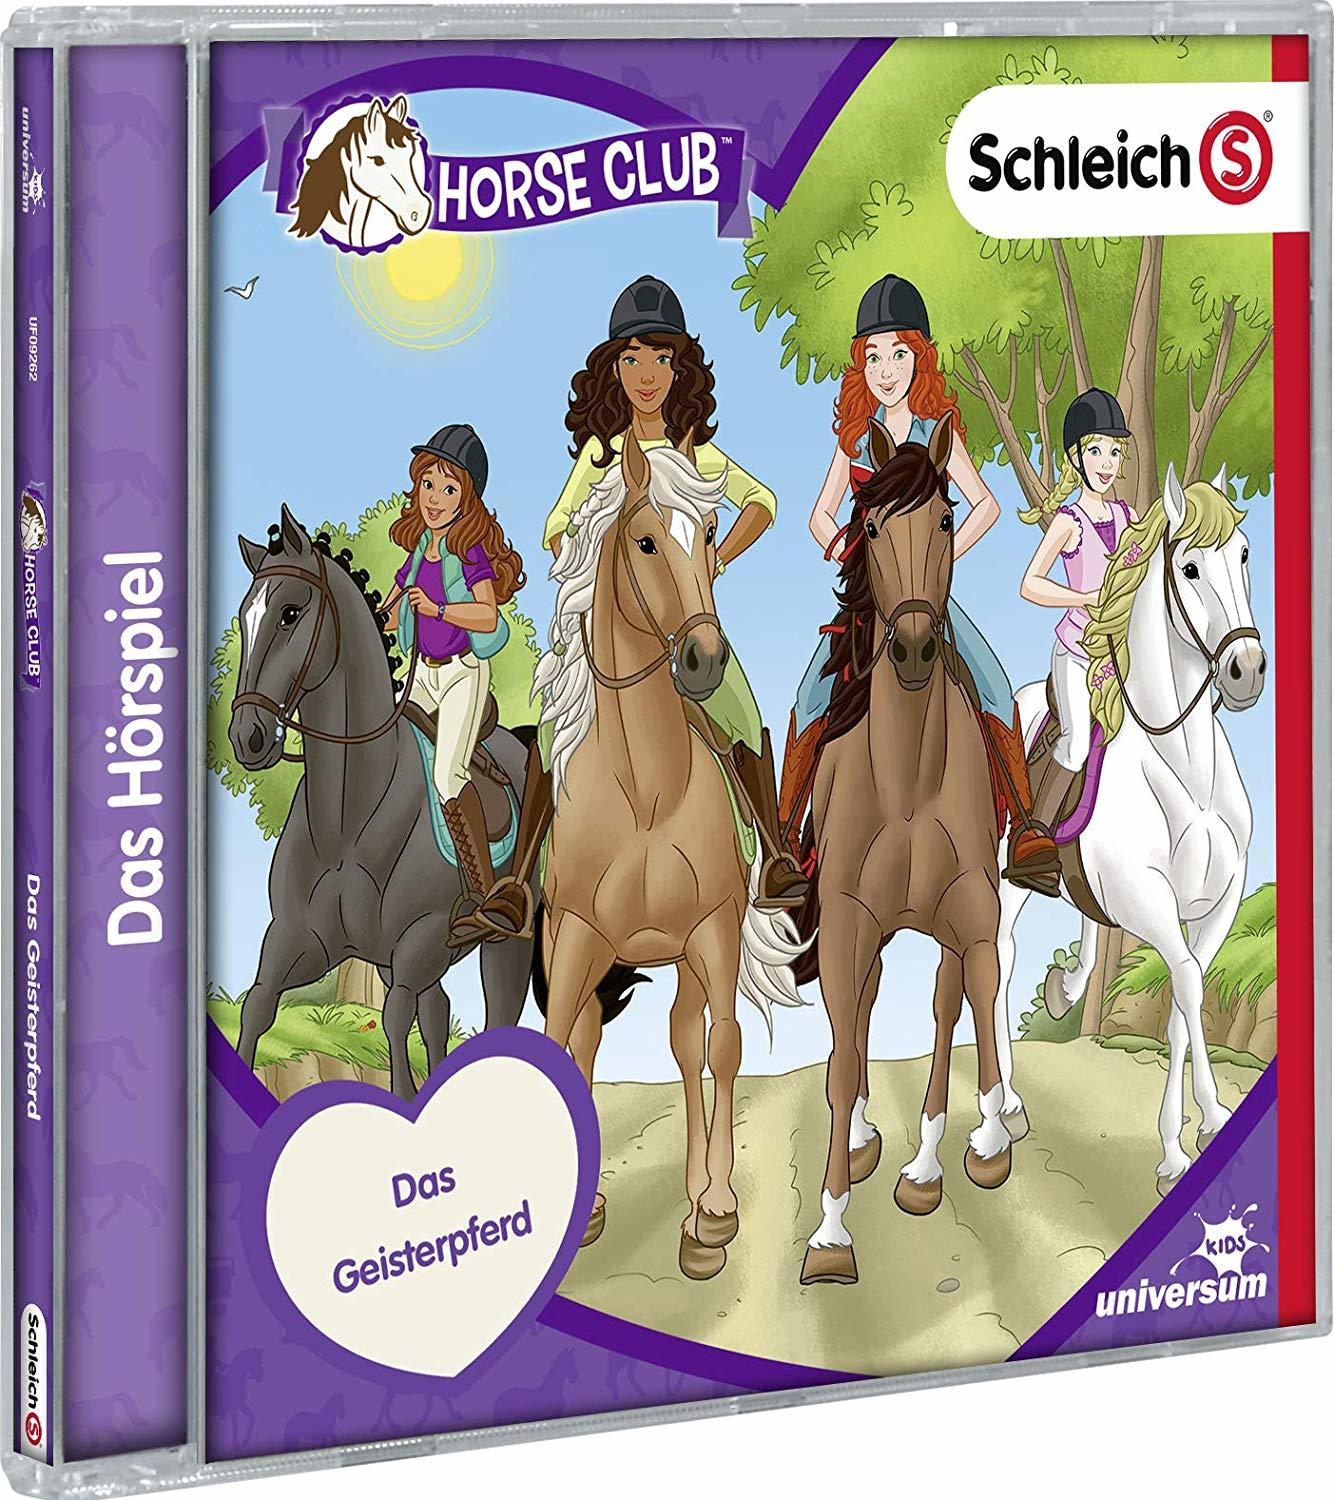 VARIOUS - Schleich-Horse Club (CD (CD) - 5)